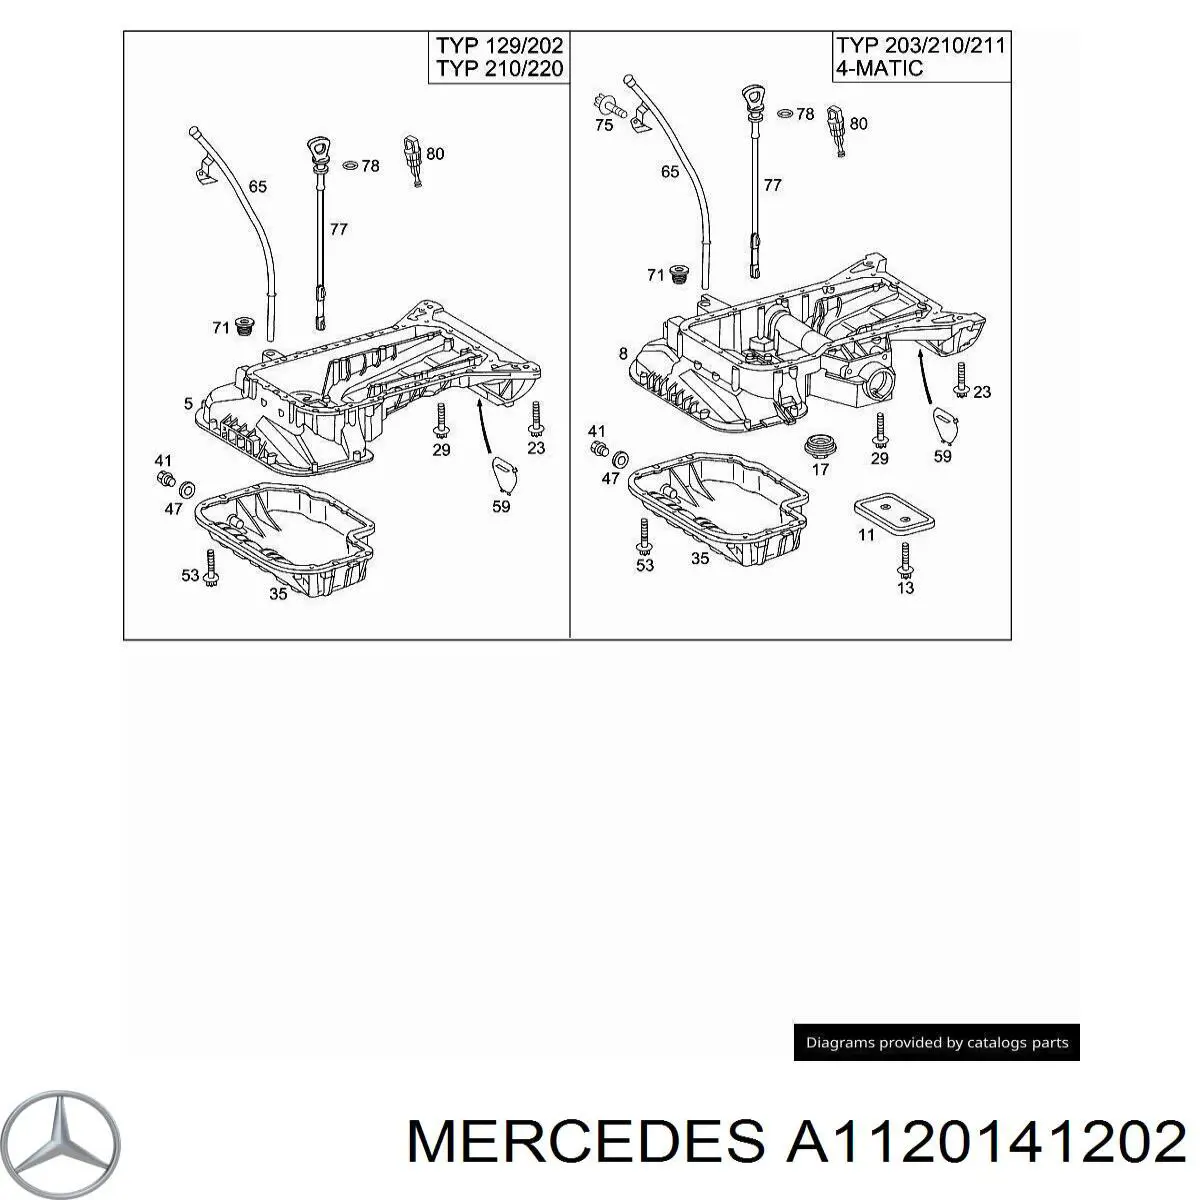 1120141202 Mercedes піддон масляний картера двигуна, верхня частина